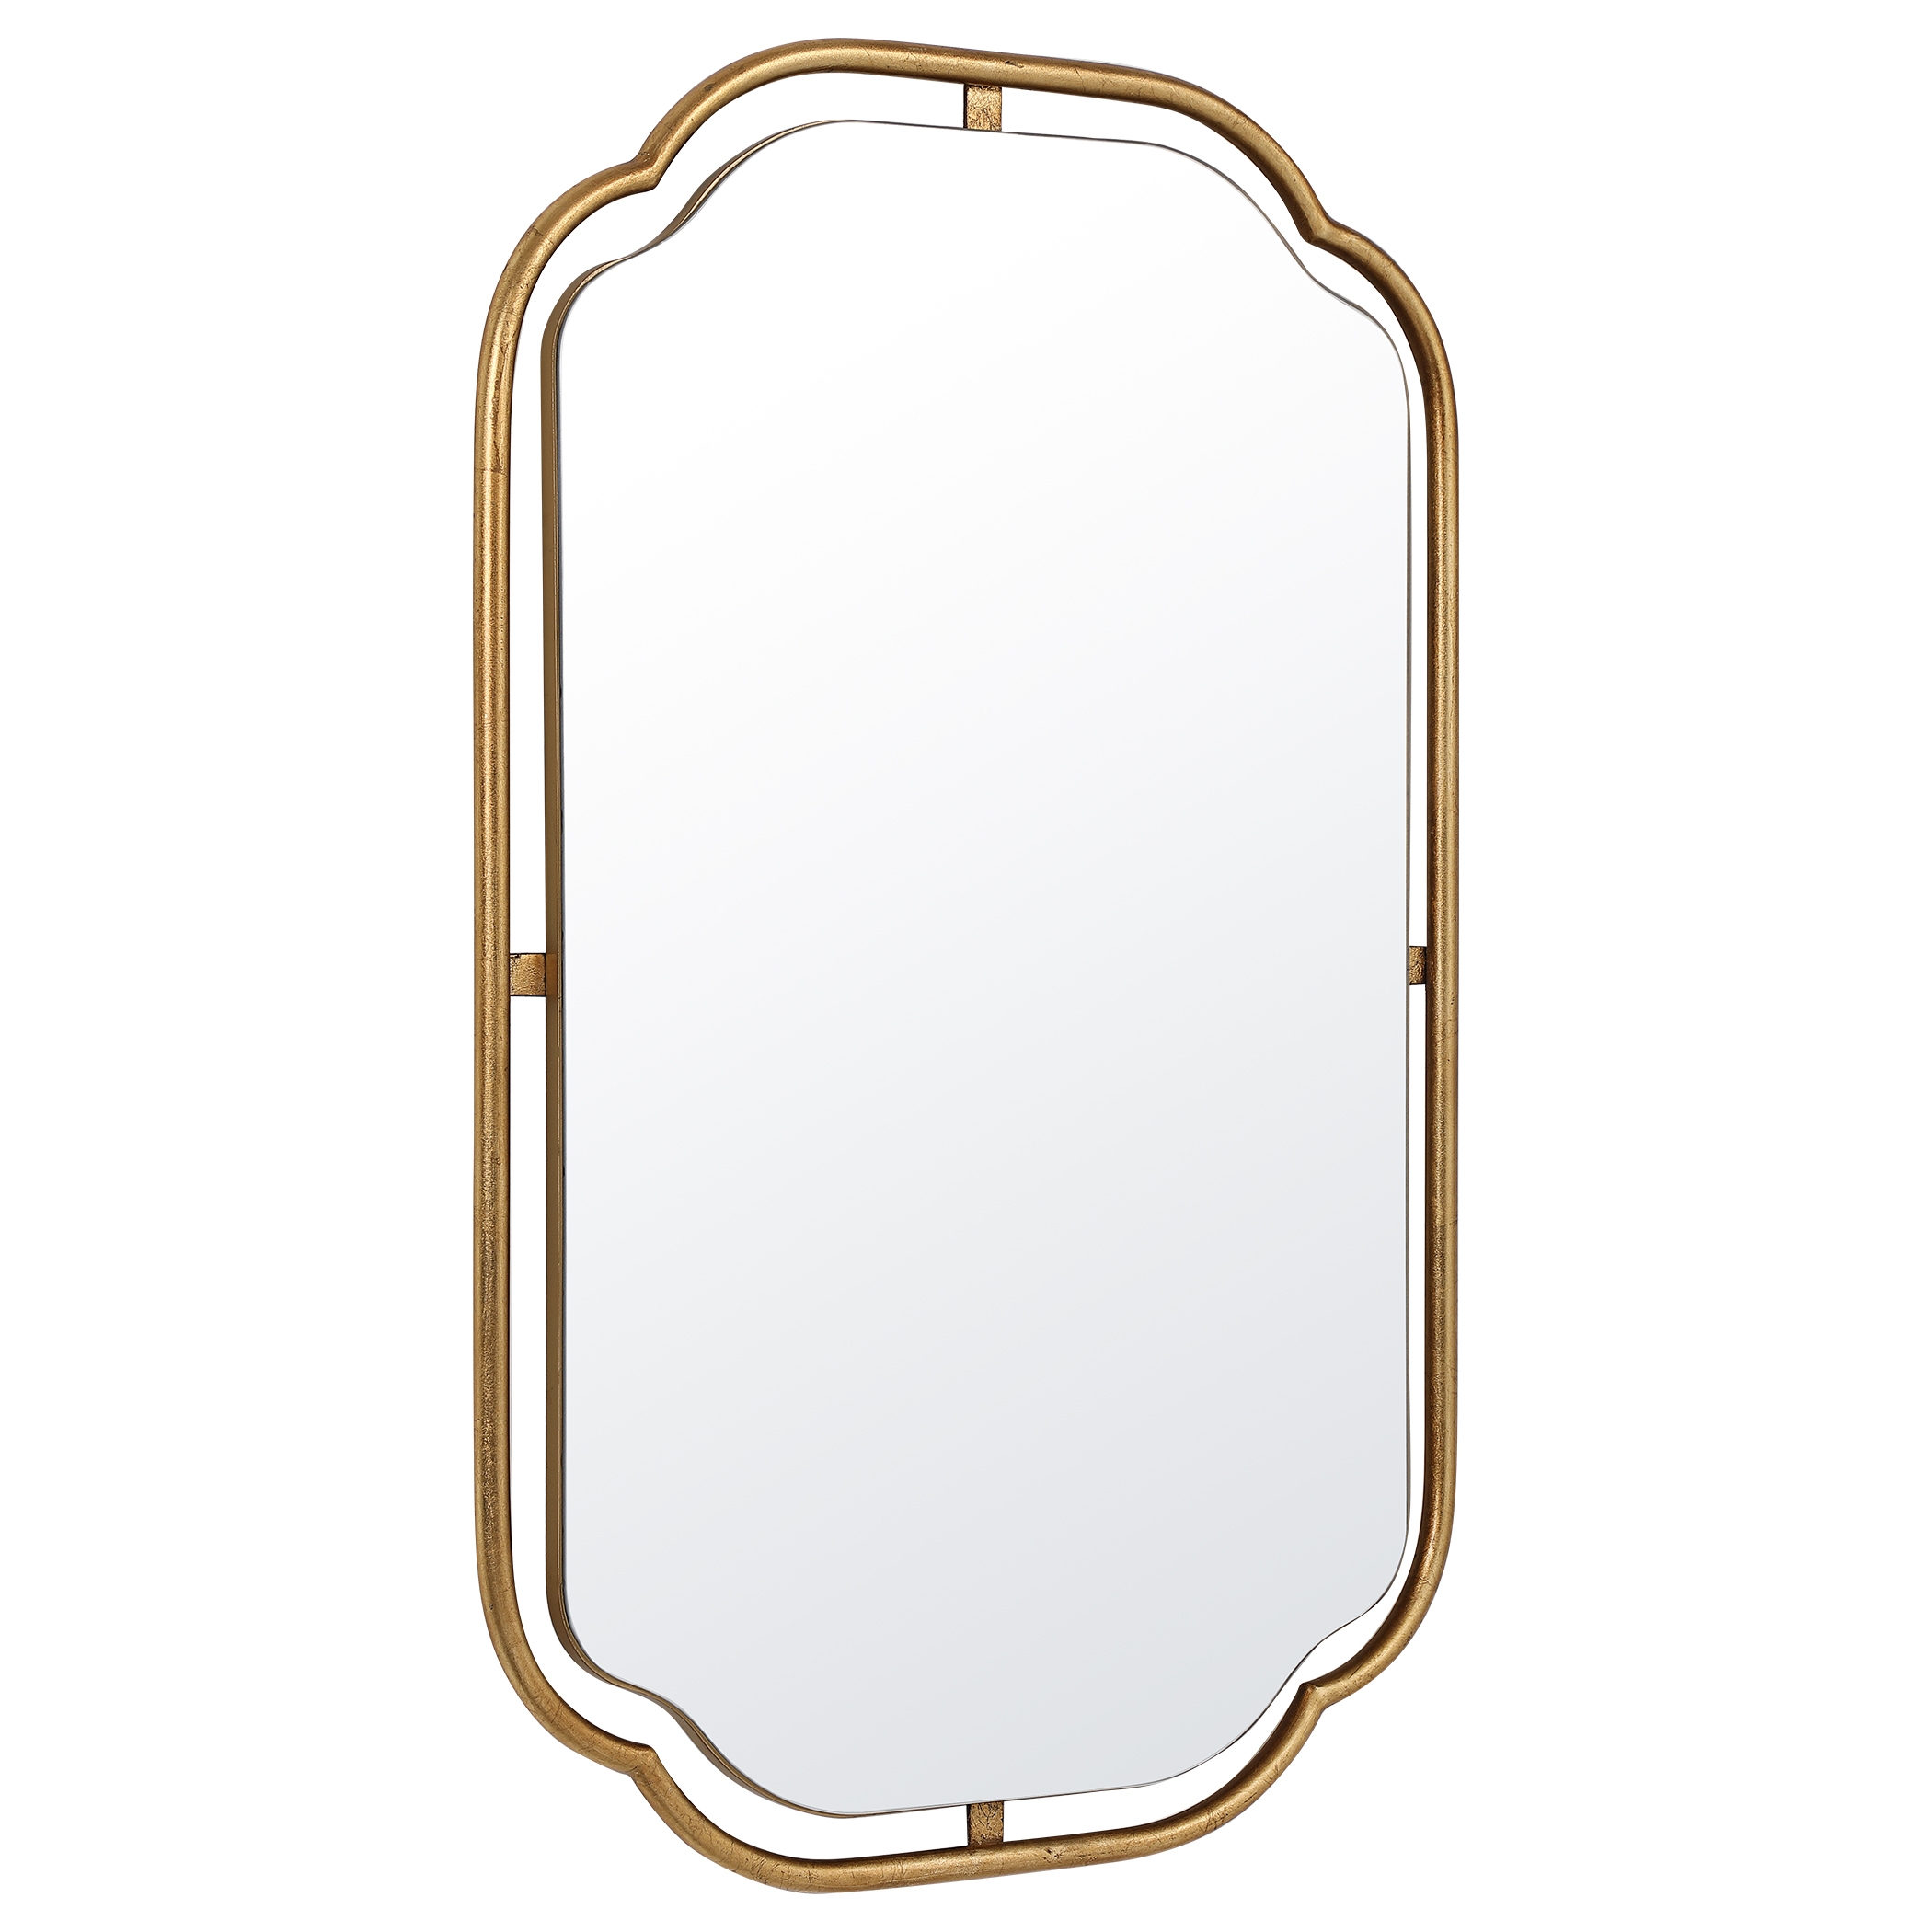 Tubular Floating Frame Mirror, Gold - Image 3